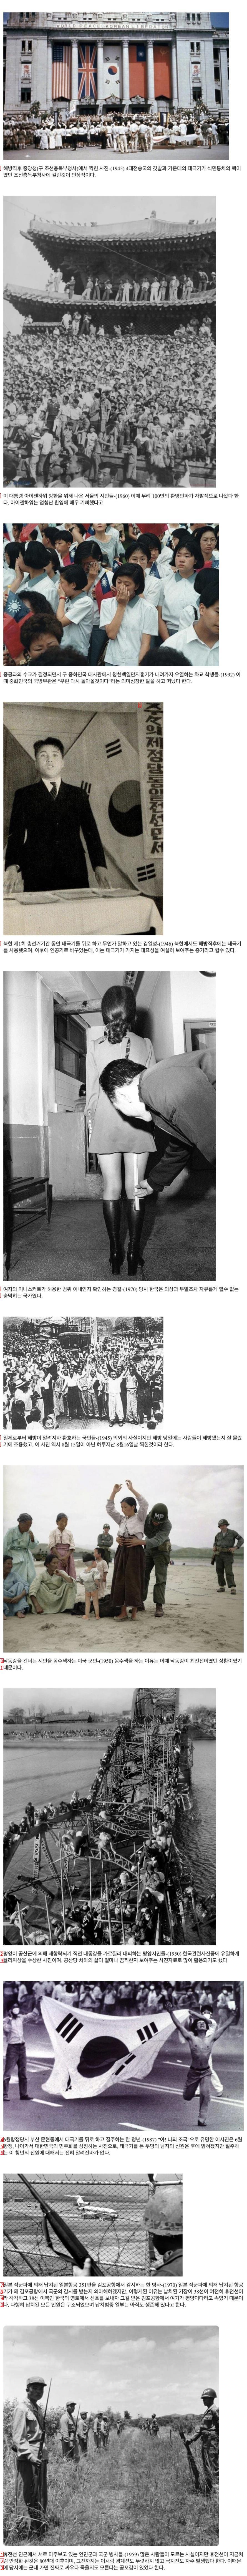 한국 현대사의 역사적인 순간들